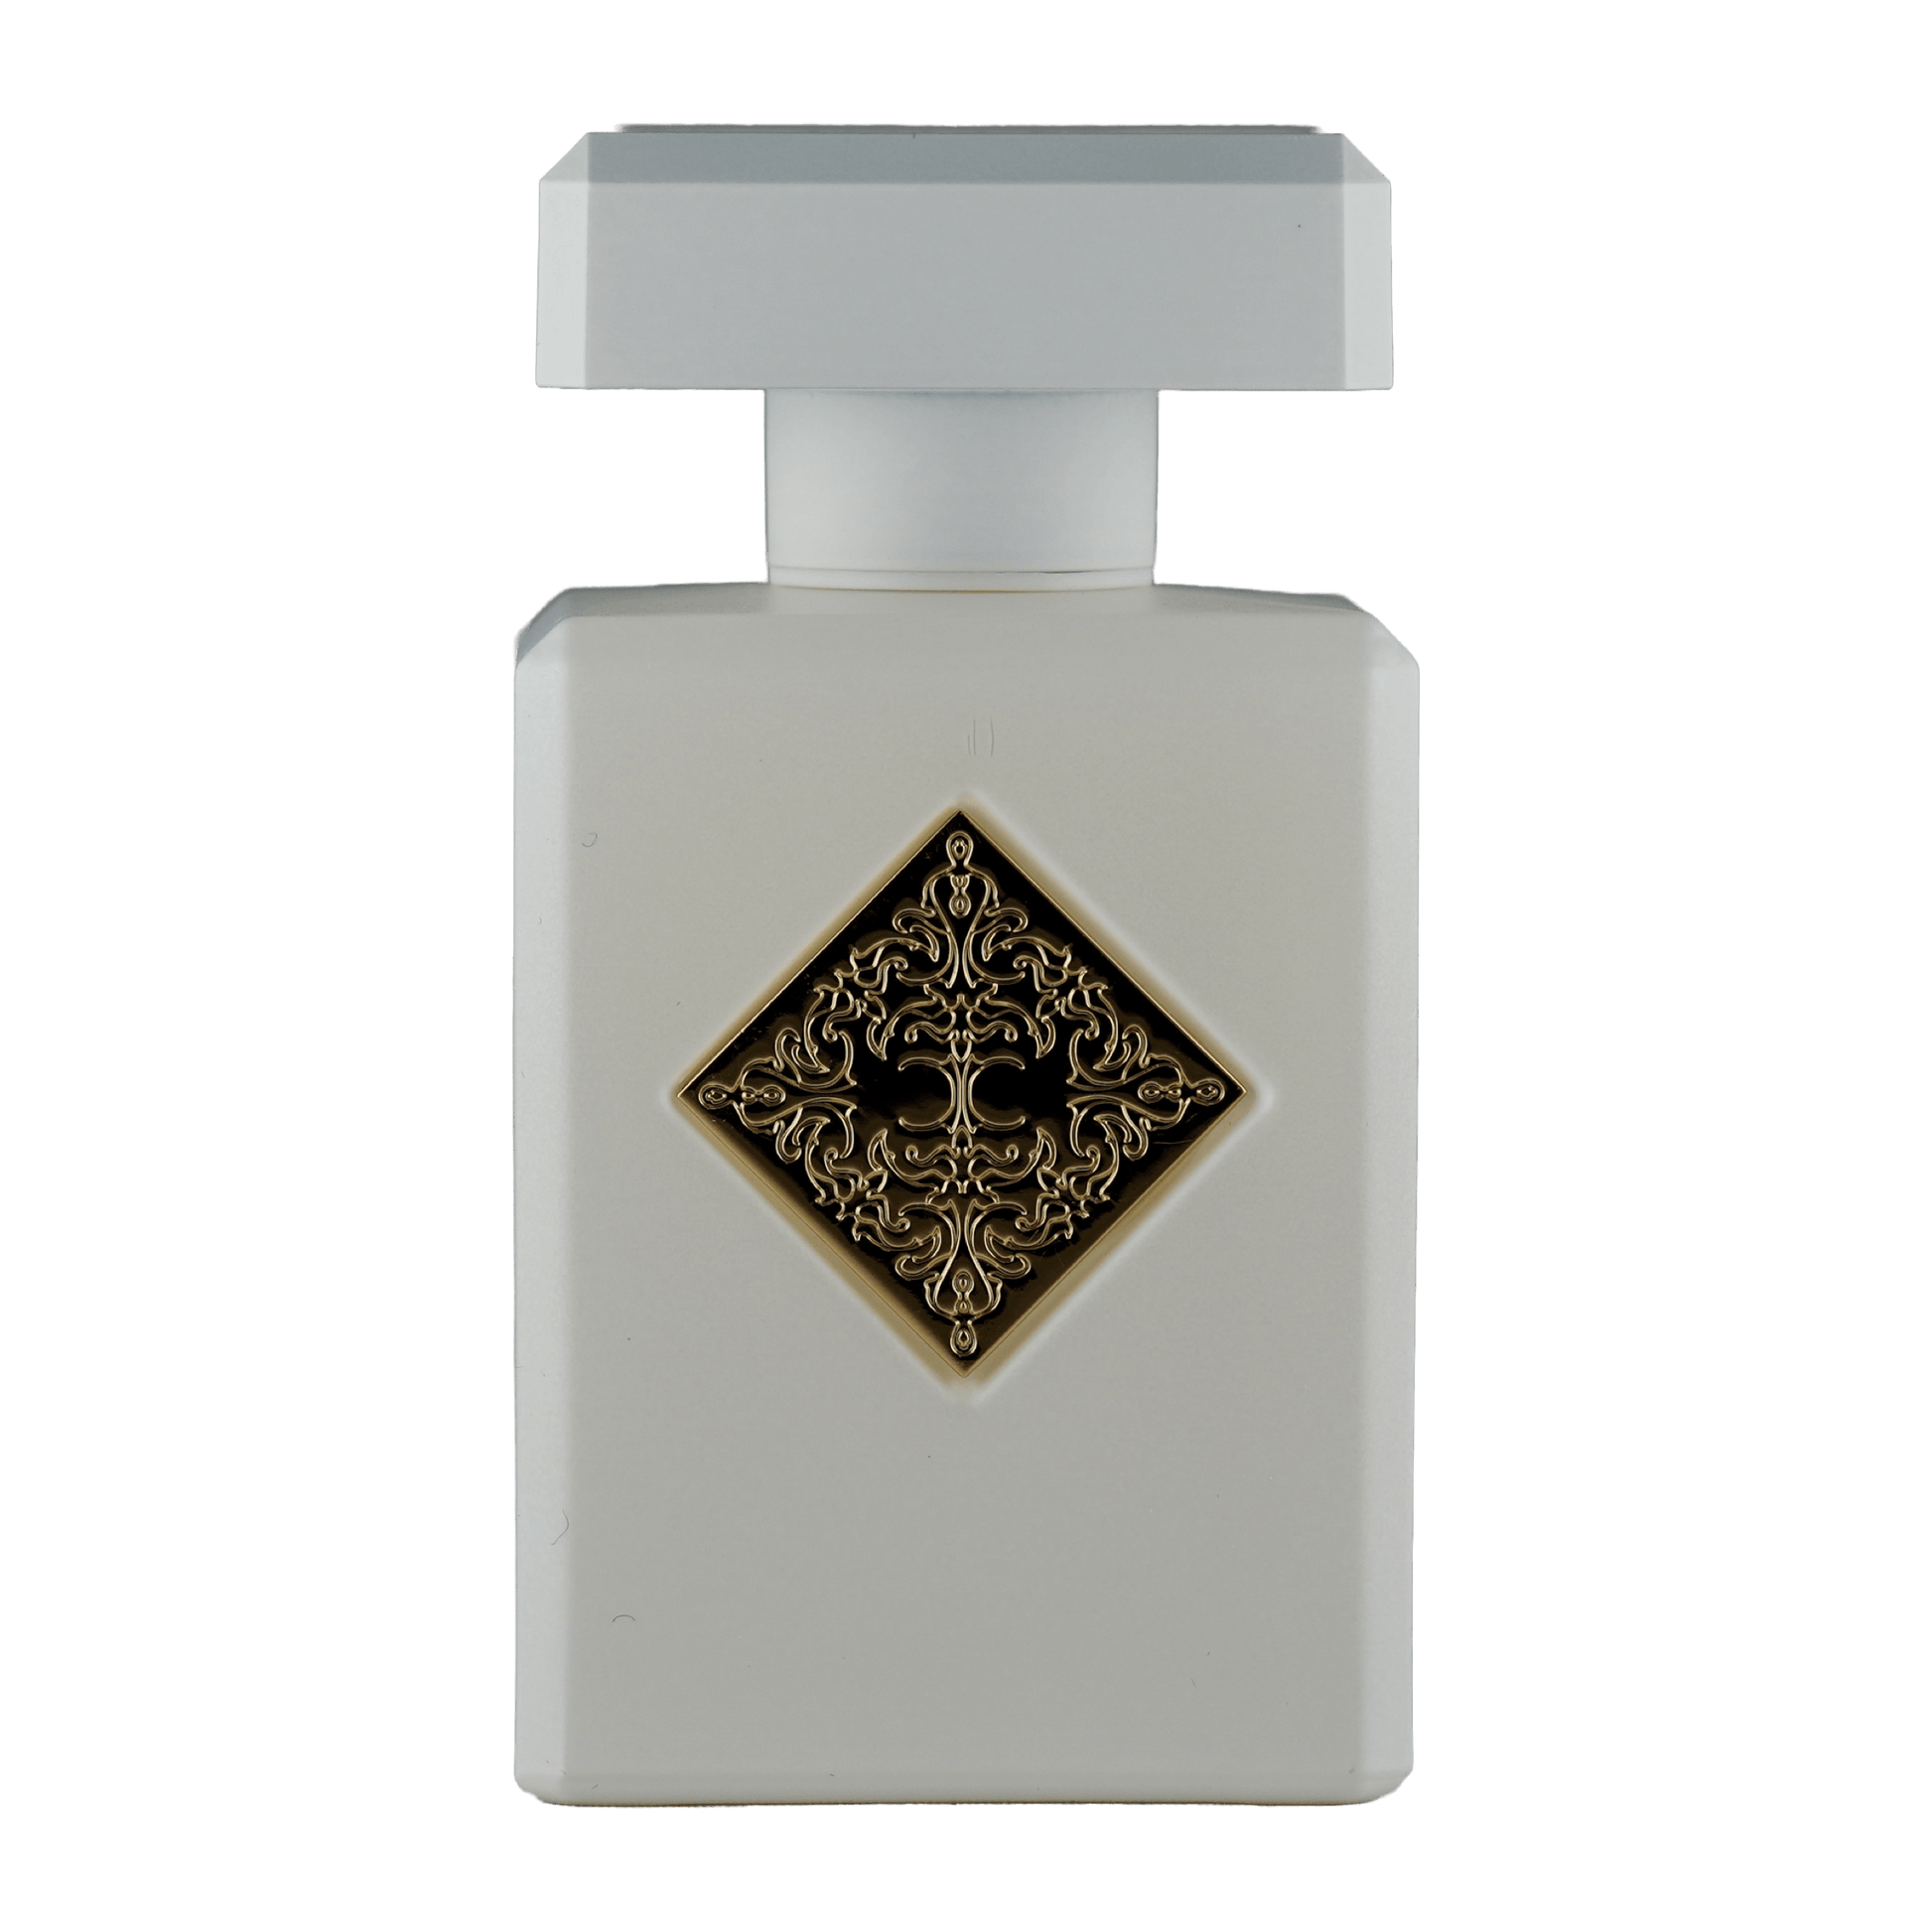 Ein Bild von dem Duft Musk Therapy als Extrait de Parfum aus der Hedonist Kollektion von Initio Parfums Privés angeboten als Parfümprobe.